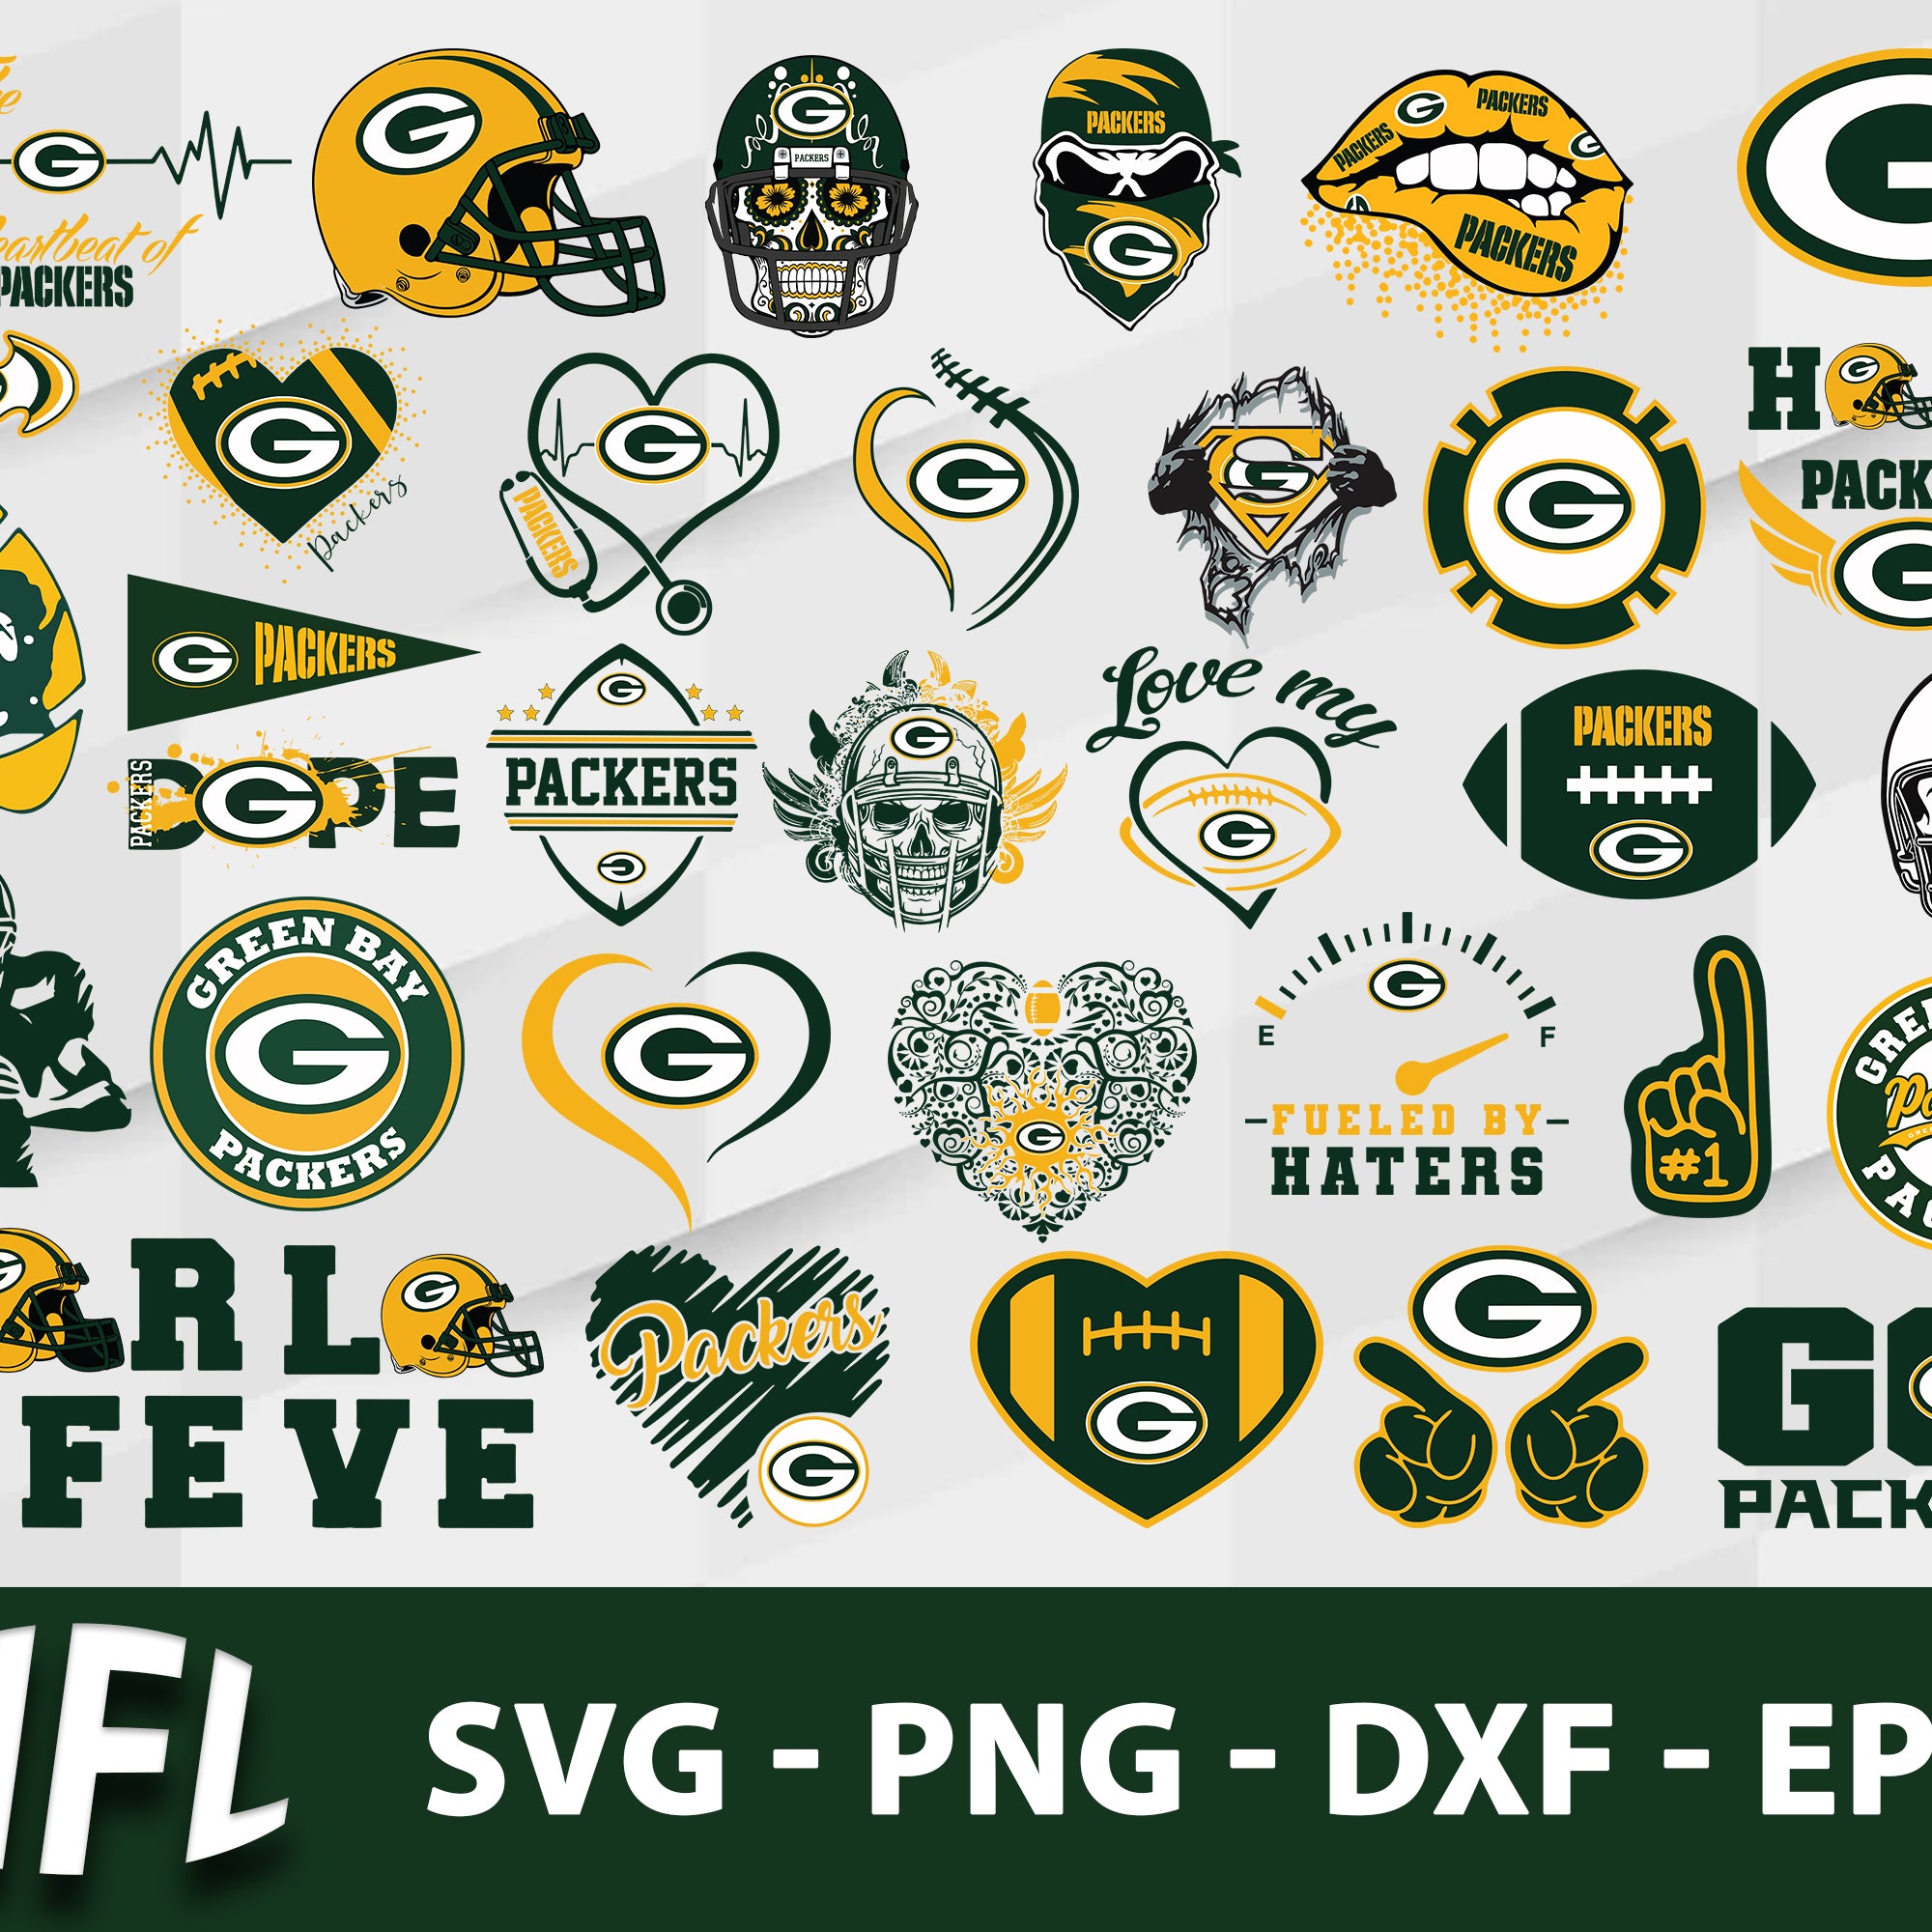 Green Bay Packers Svg Bundle, Green Bay Packers Svg, Sport Svg, Nfl Svg, Png, Dxf, Eps Digital File.